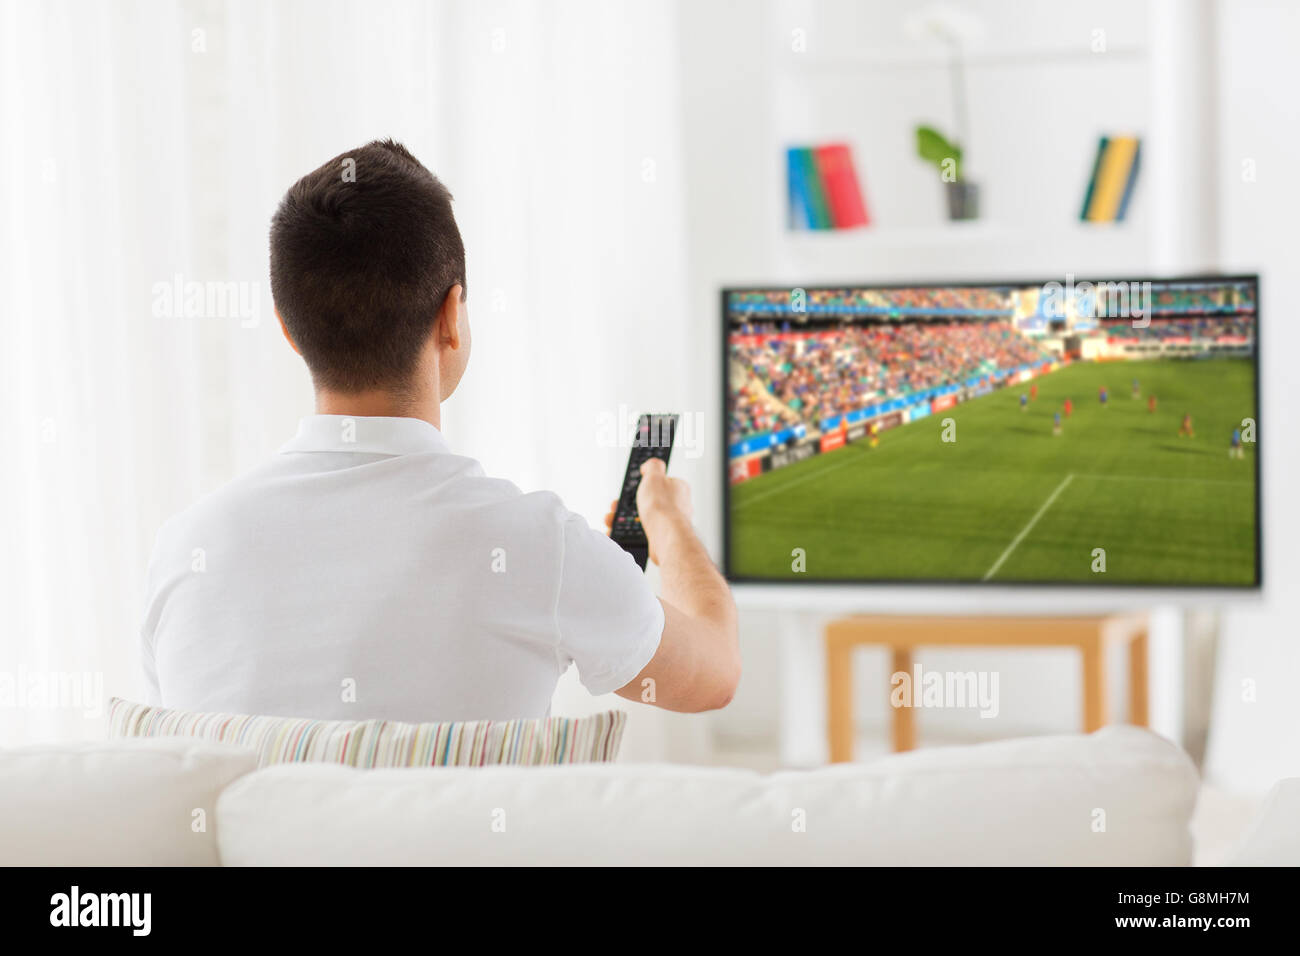 Mann, Fußball gucken oder Fußballspiel im Fernsehen zu Hause  Stockfotografie - Alamy